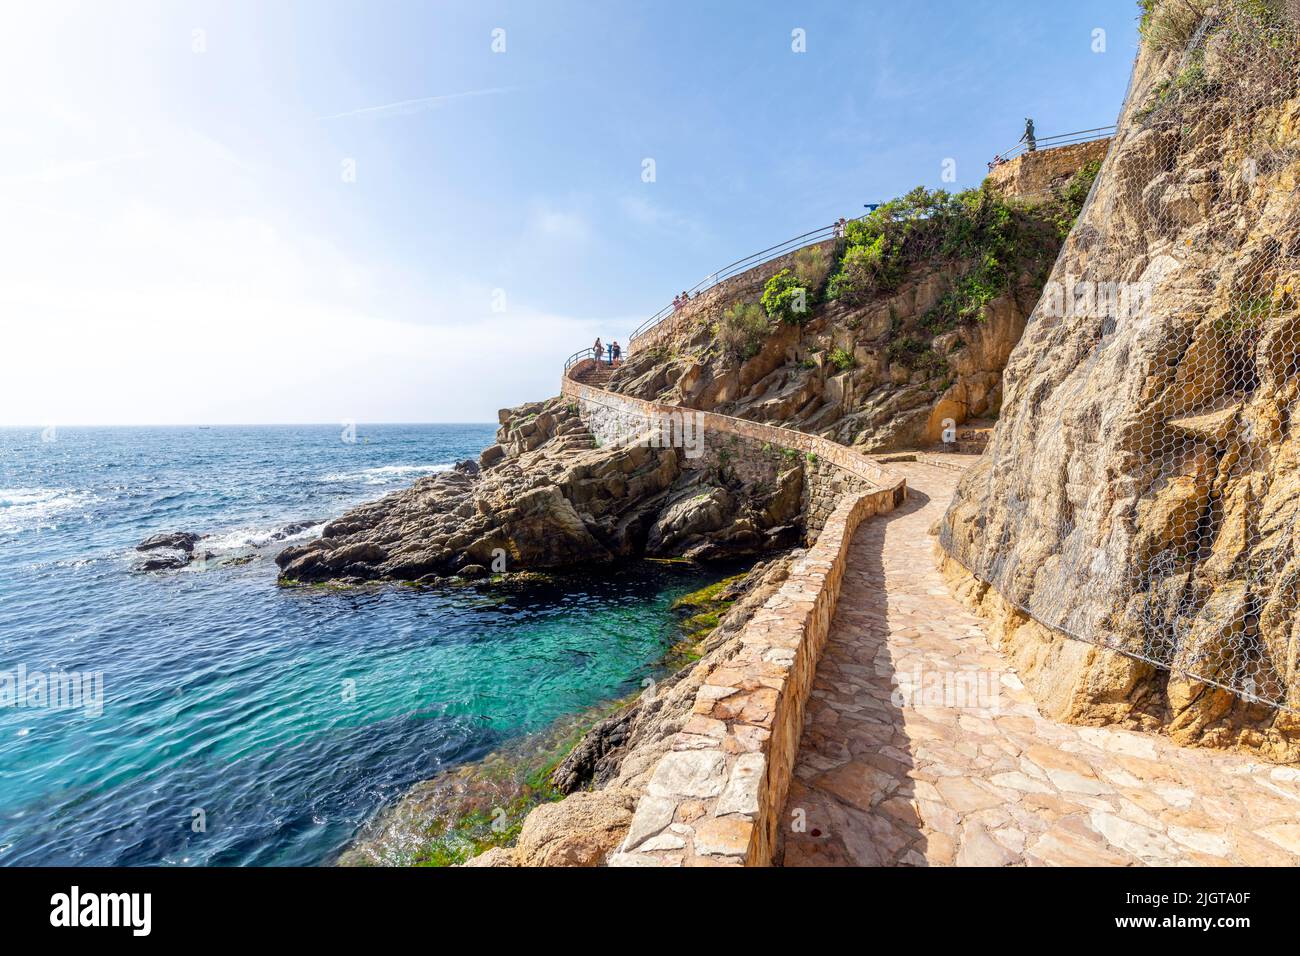 Der Wanderweg am Hang zu den Jardins de Santa Clotilde an der Costa Brava Küste von Lloret de Mar, Spanien. Stockfoto